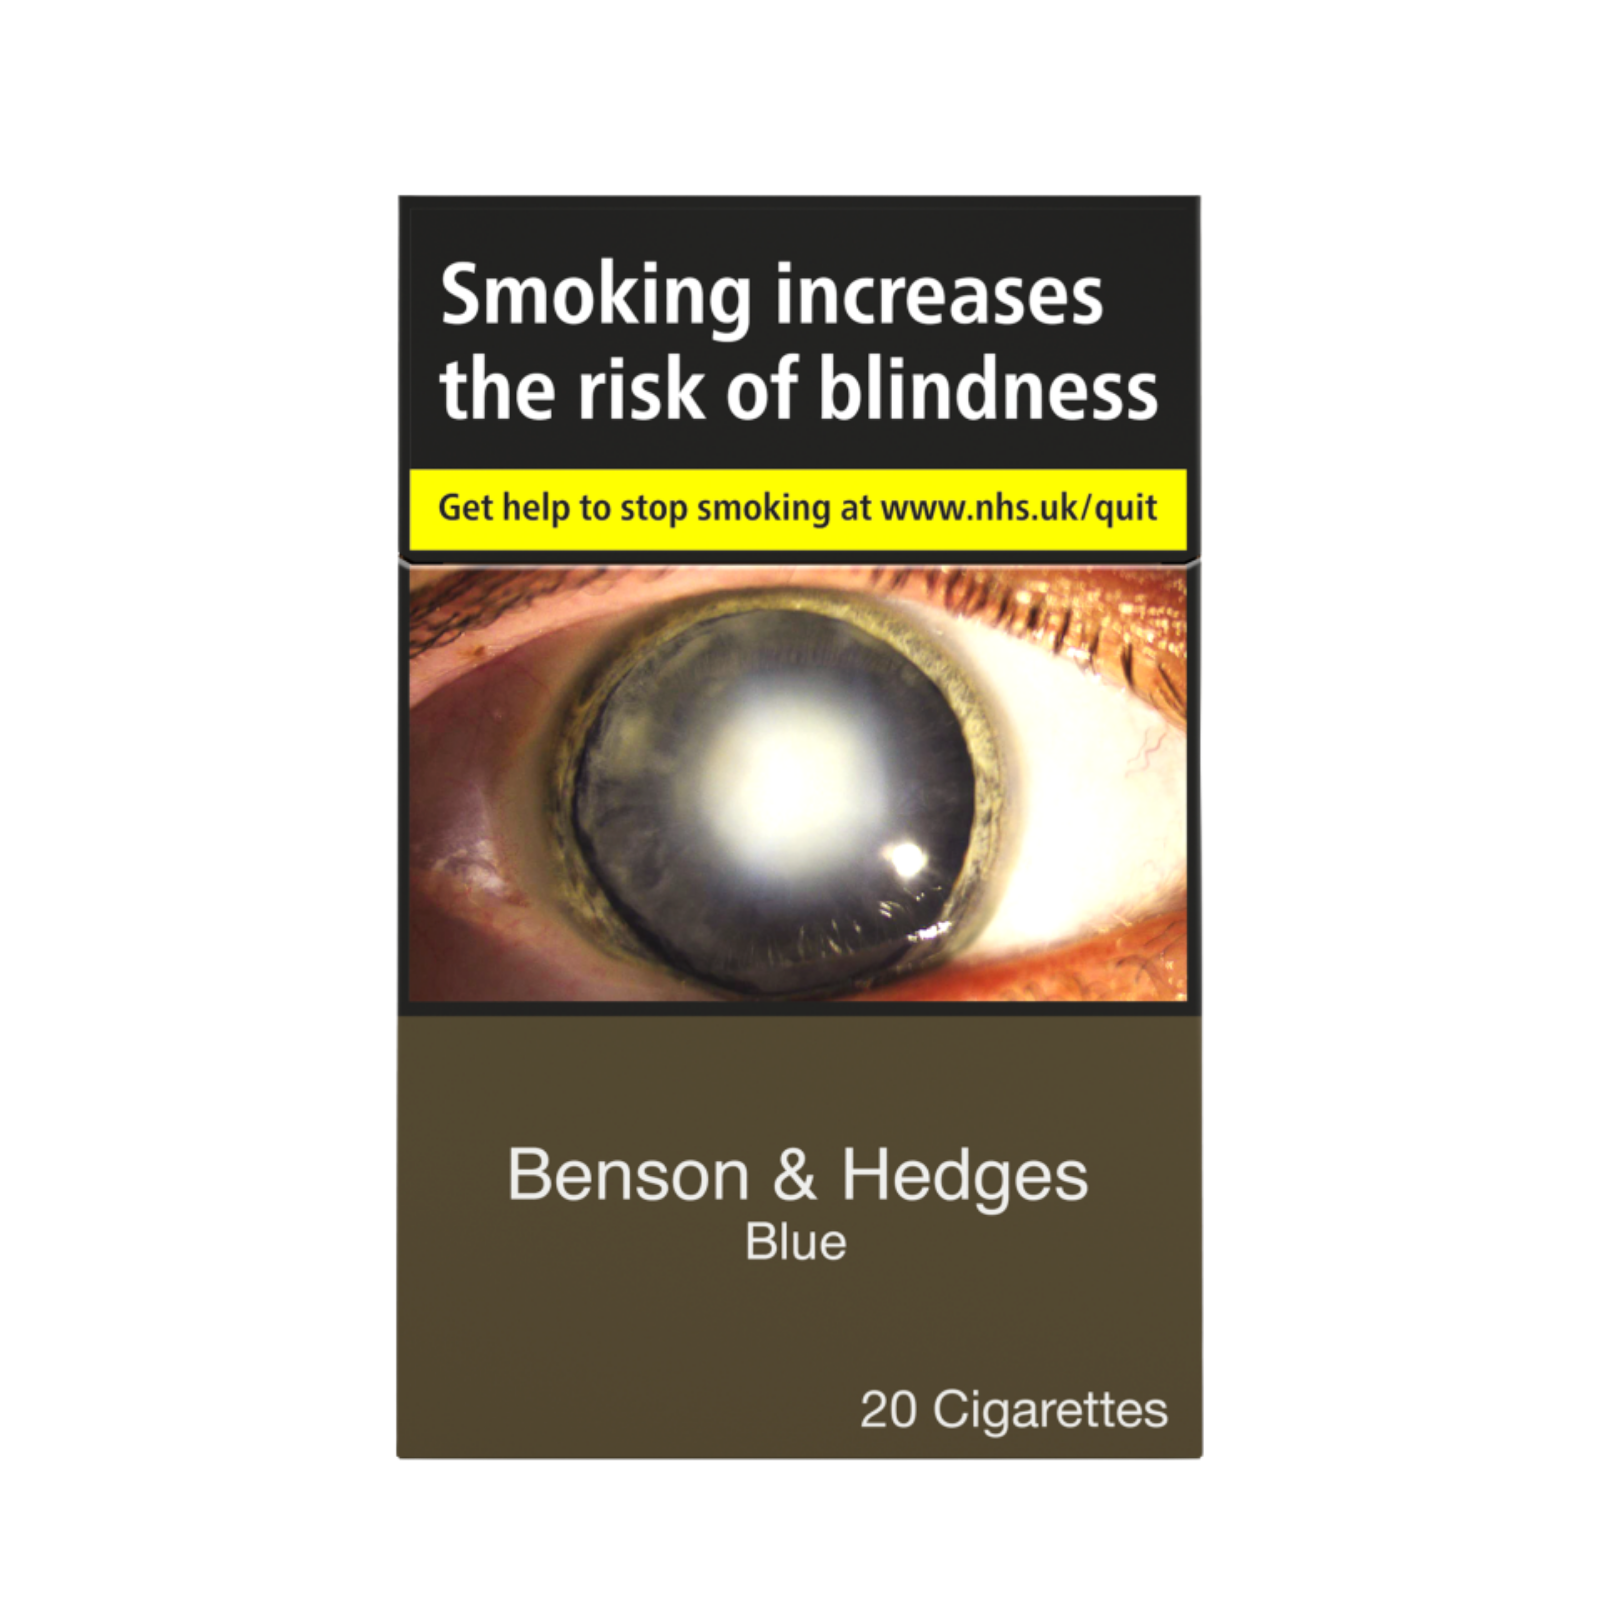 Benson & Hedges Blue Cigarettes, 20pcs